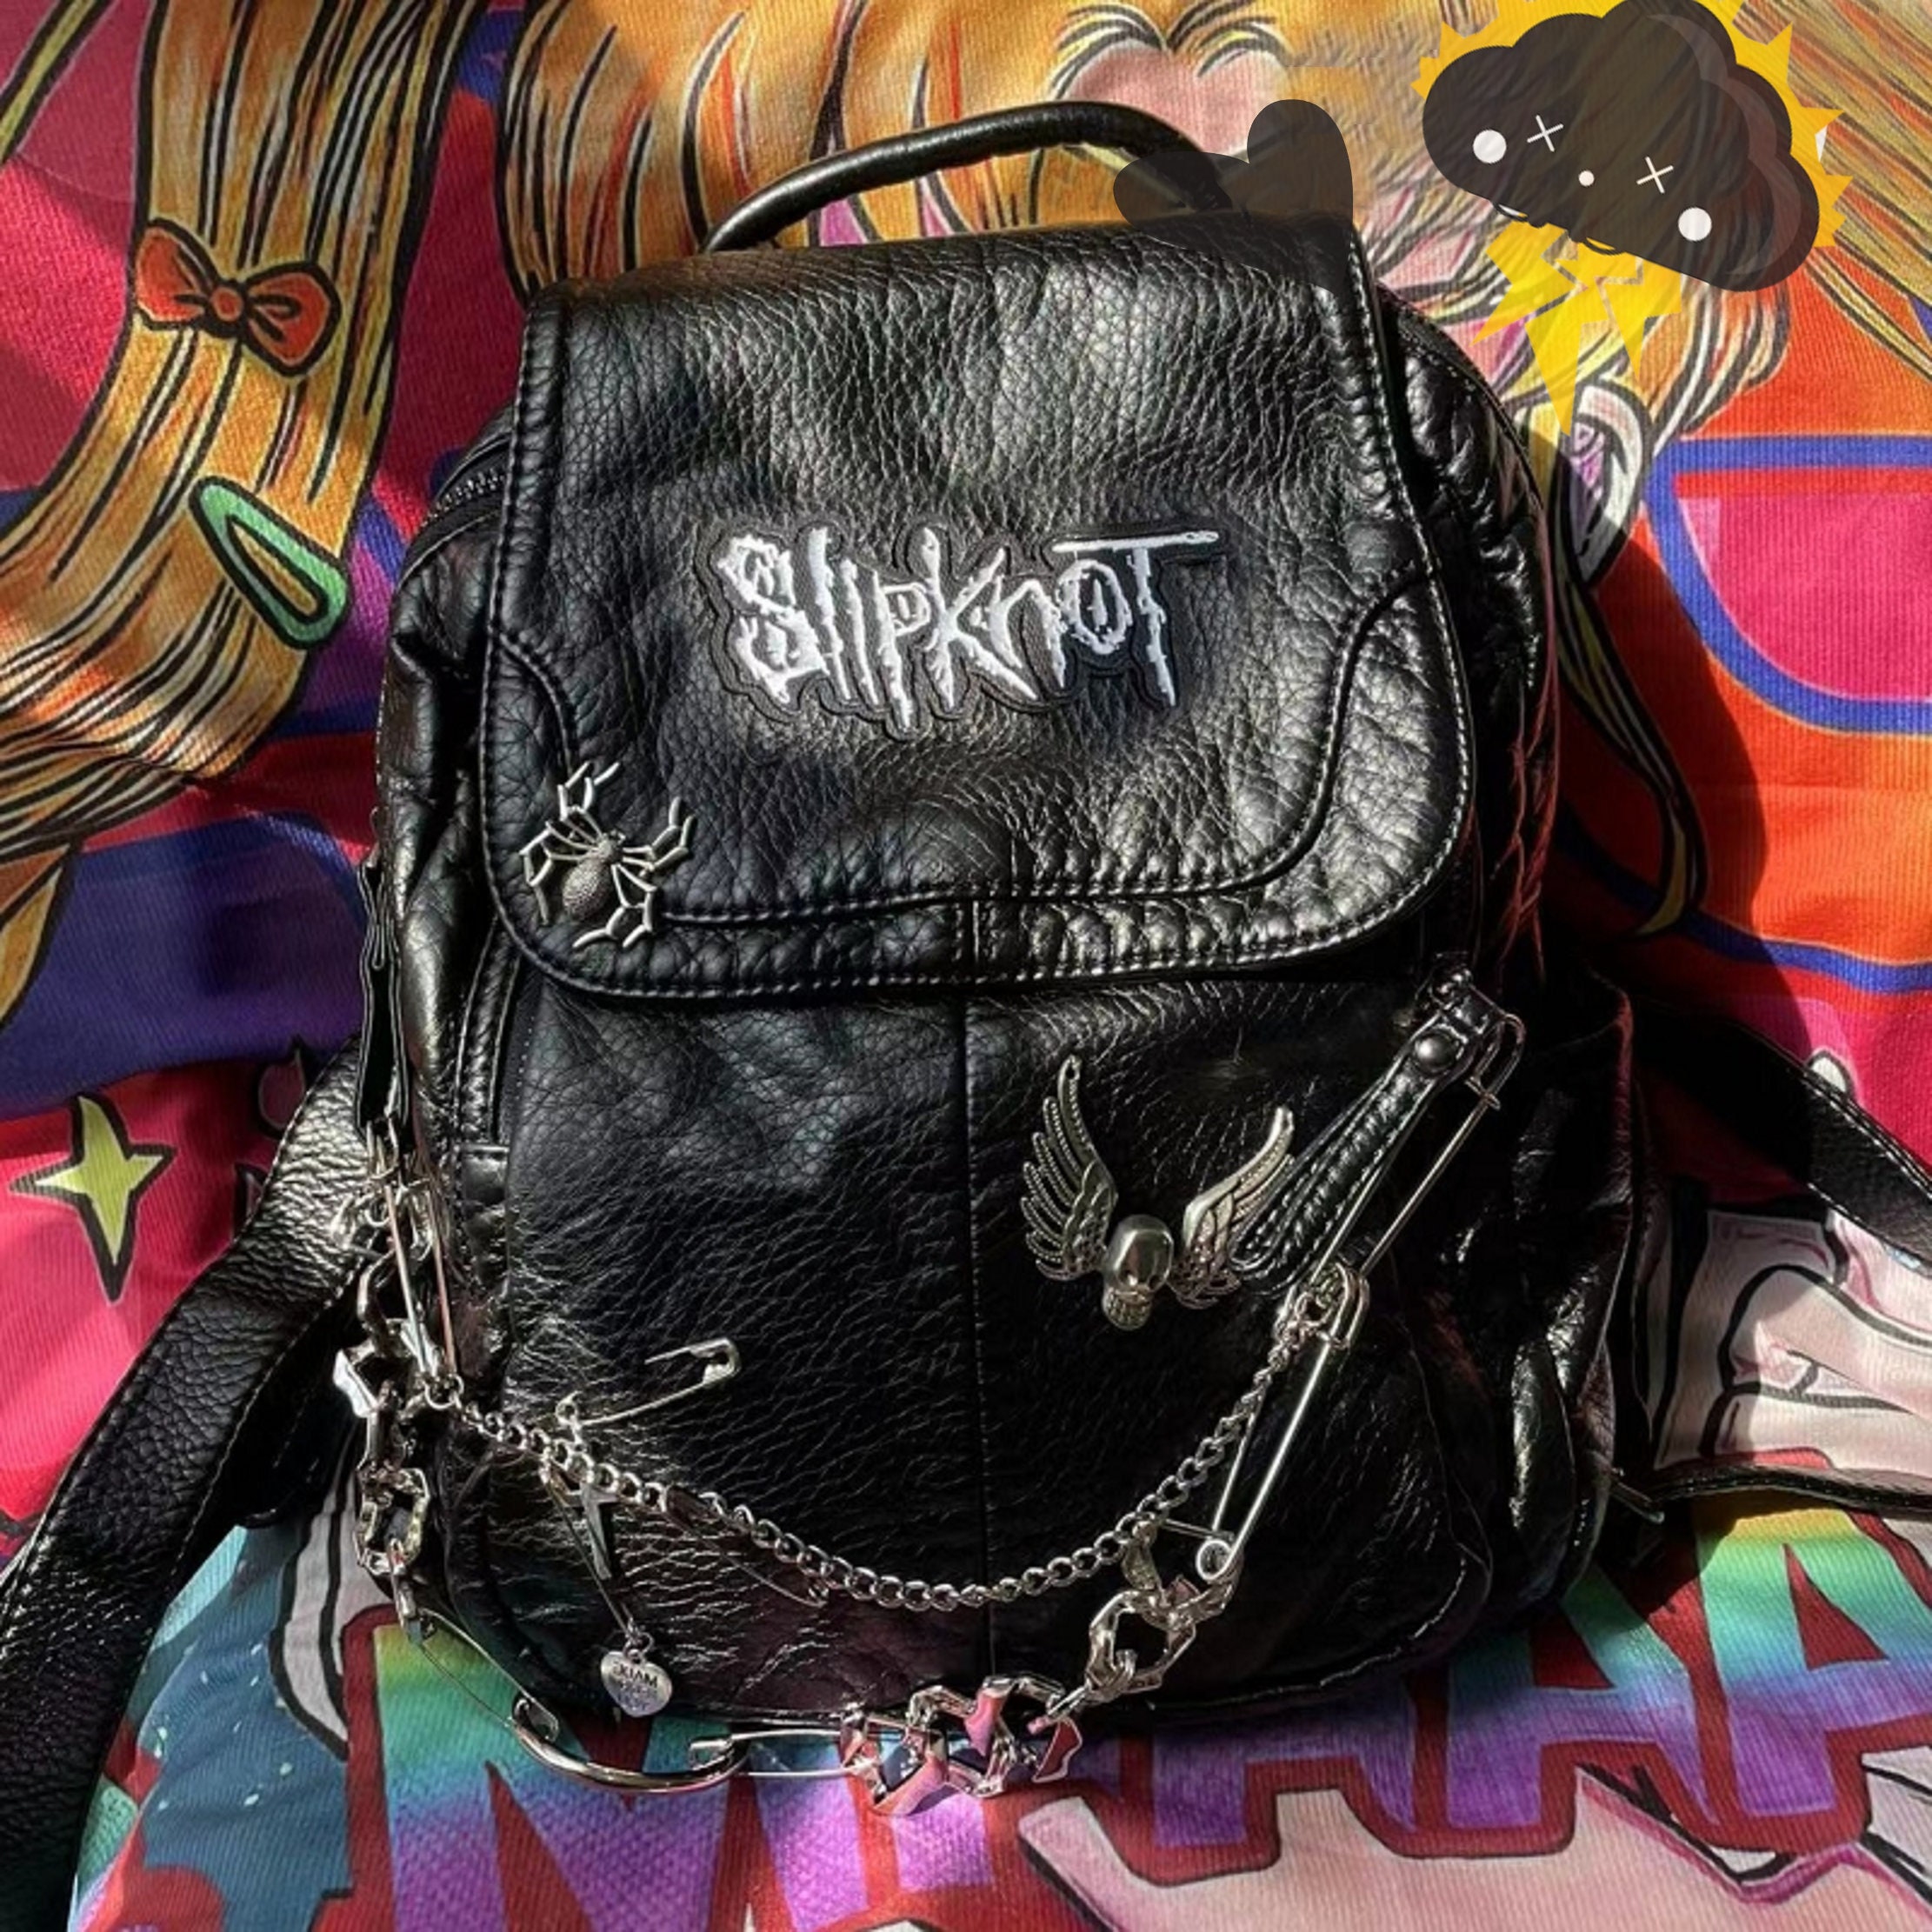 Punk patch bag diy by Falsemarker on DeviantArt